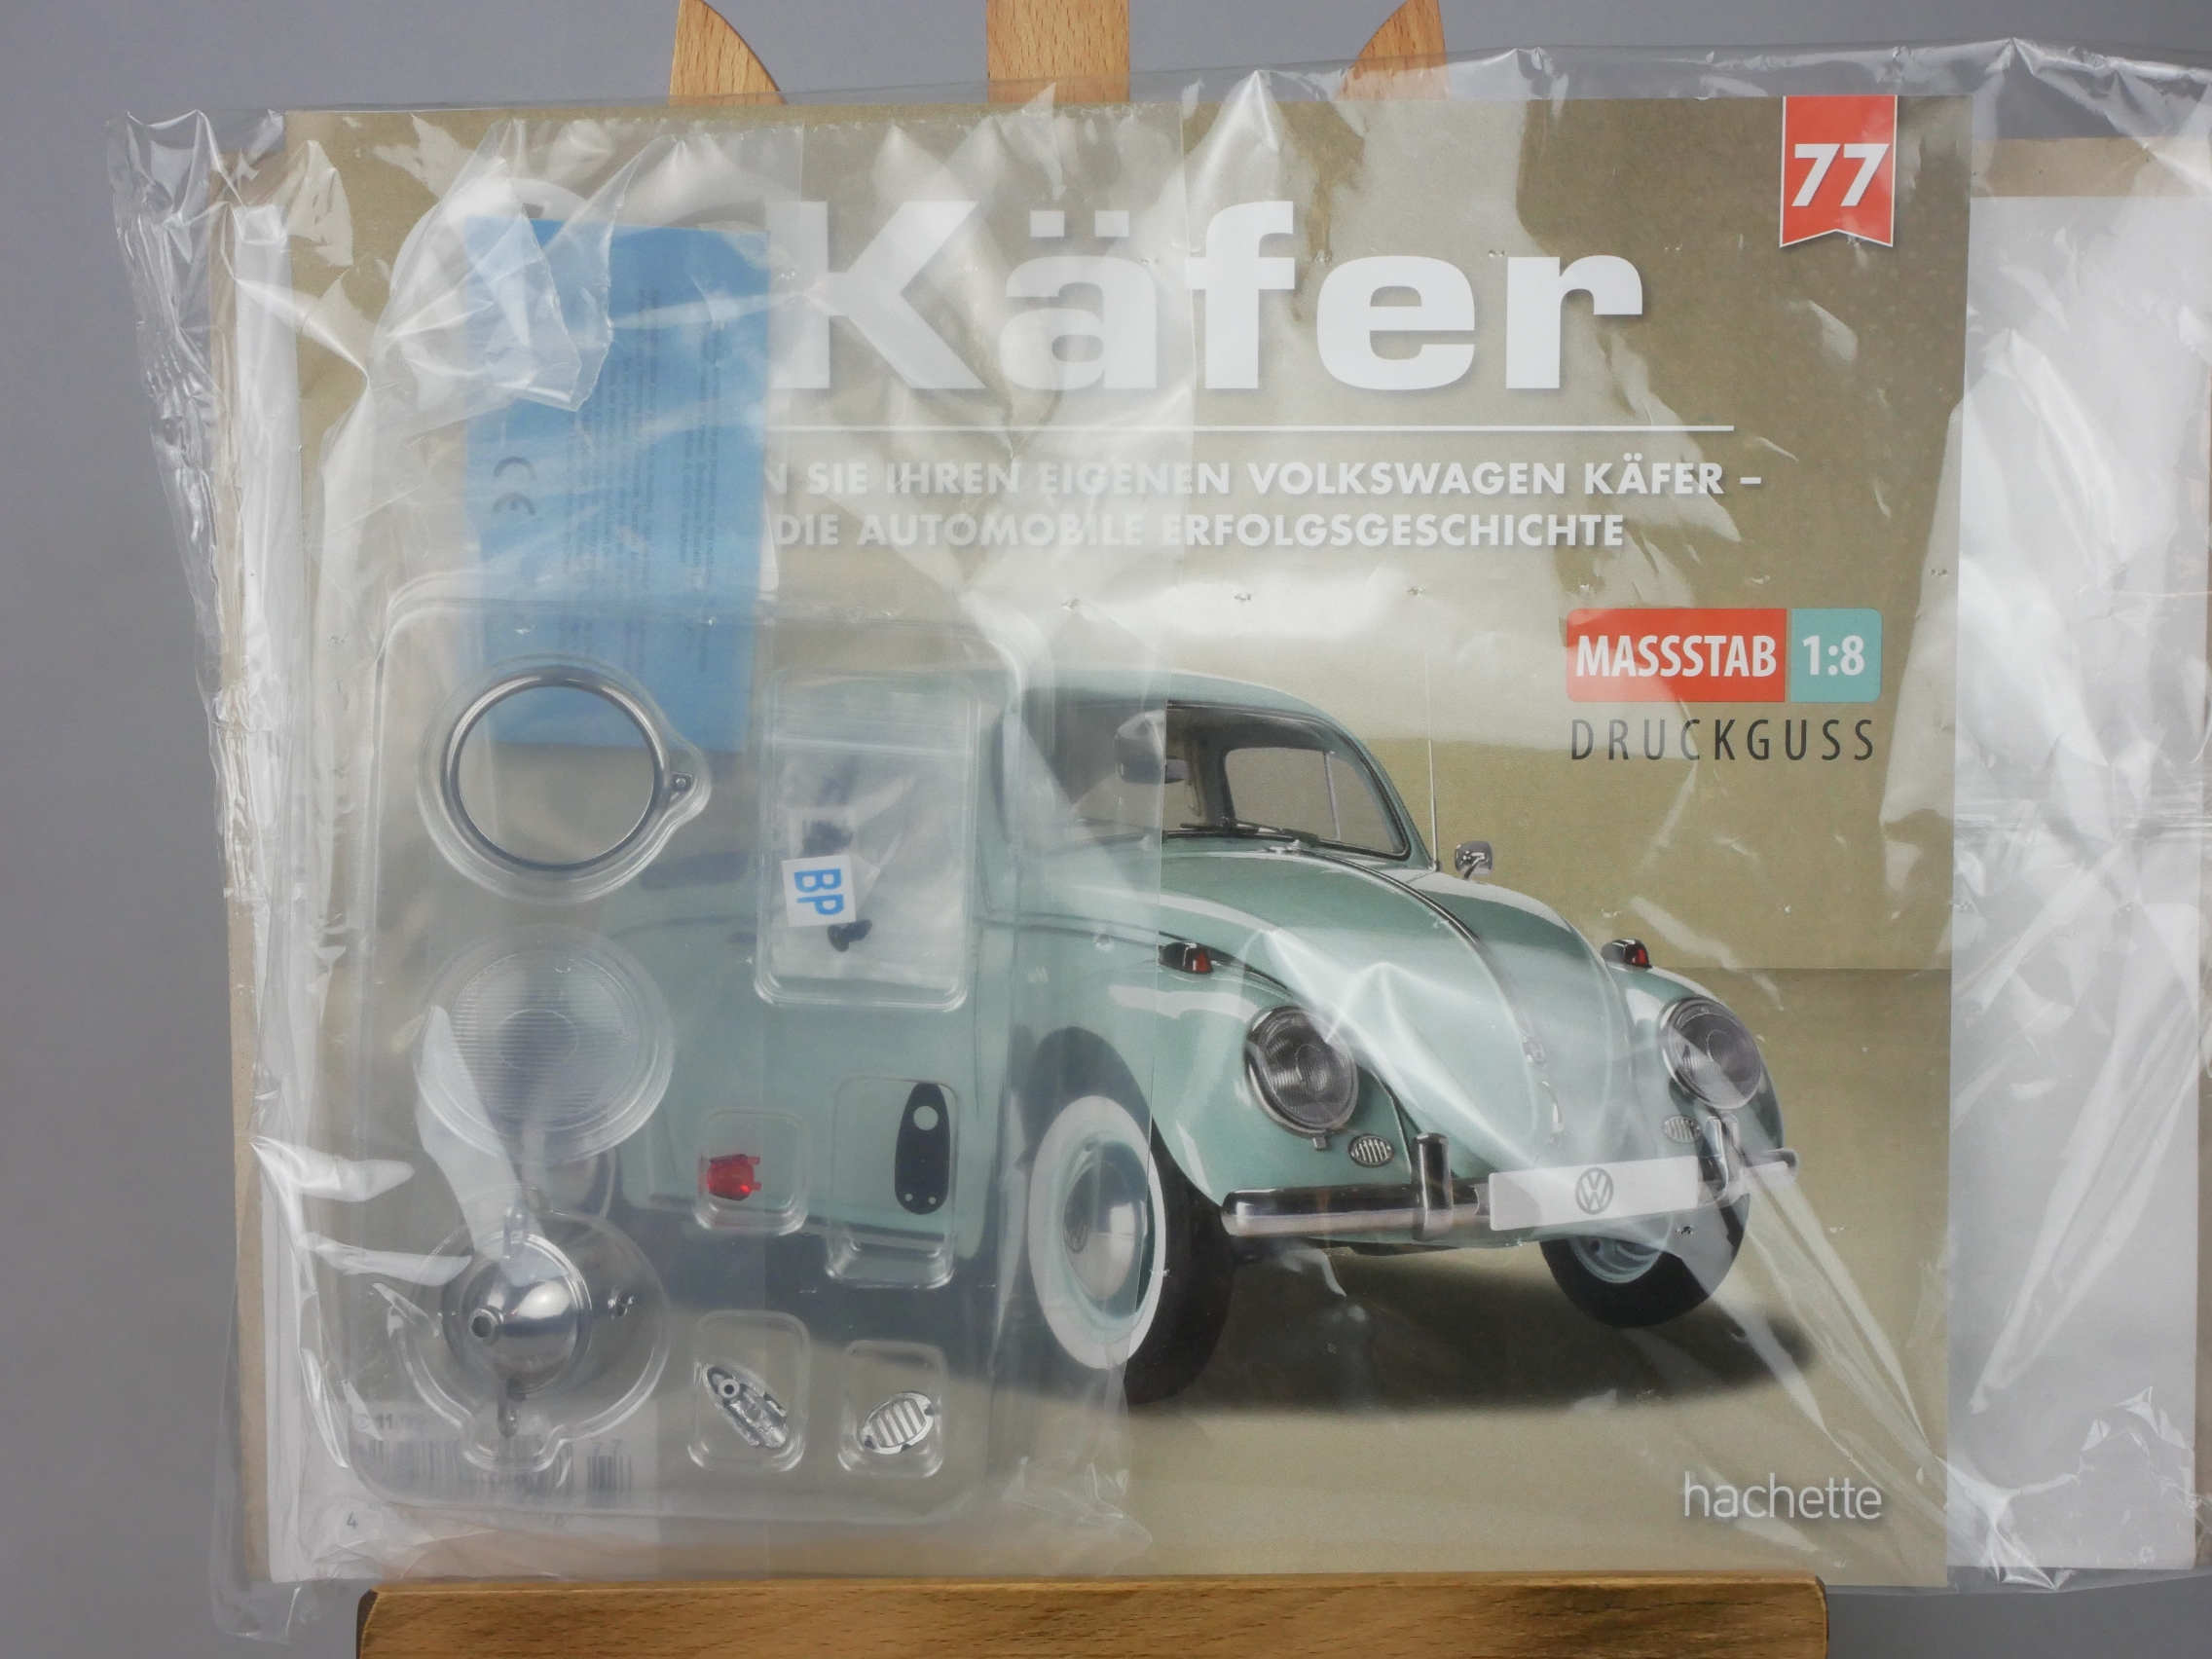  Ausgabe 77 Volkswagen VW Käfer 1/8 Hachette - 126444